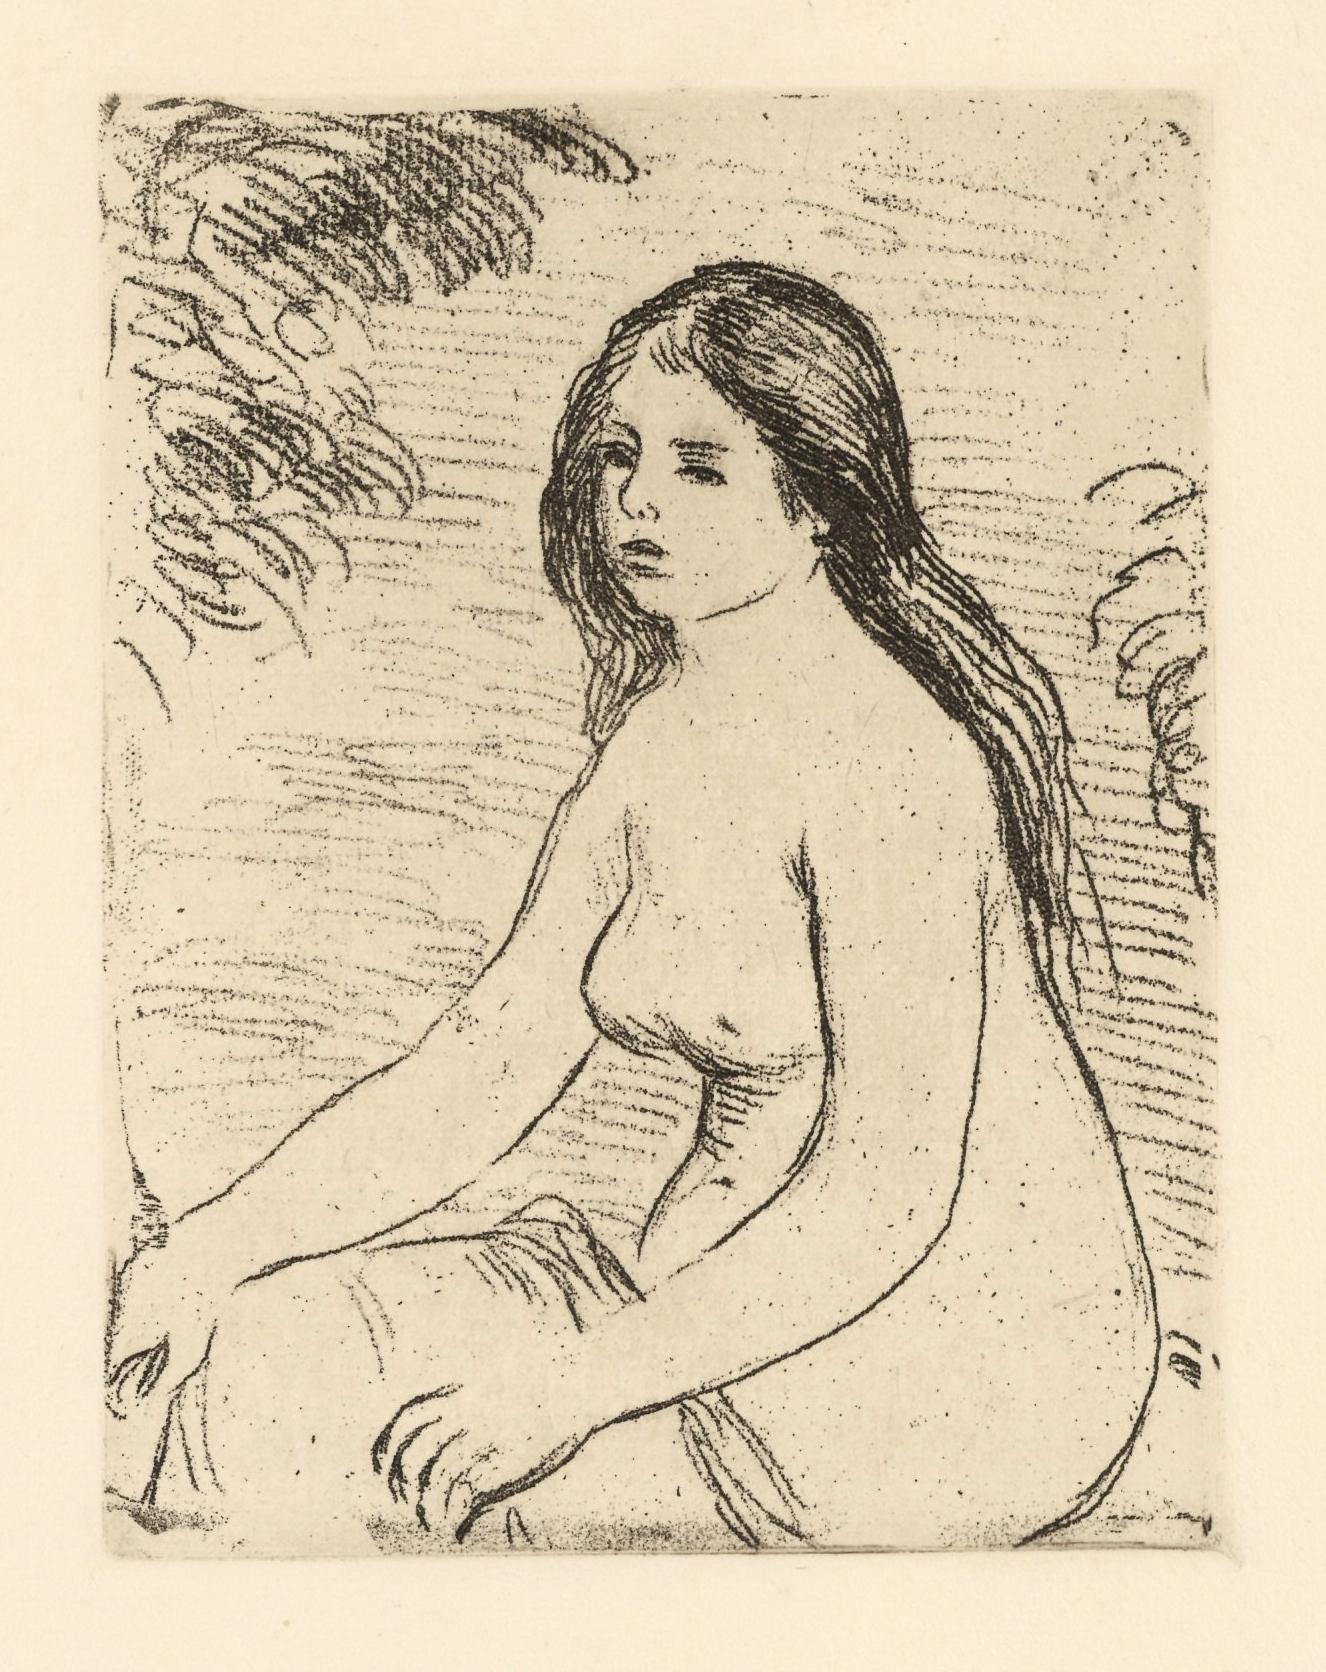 Pierre-Auguste Renoir Nude Print - "Femme nue assise" original etching